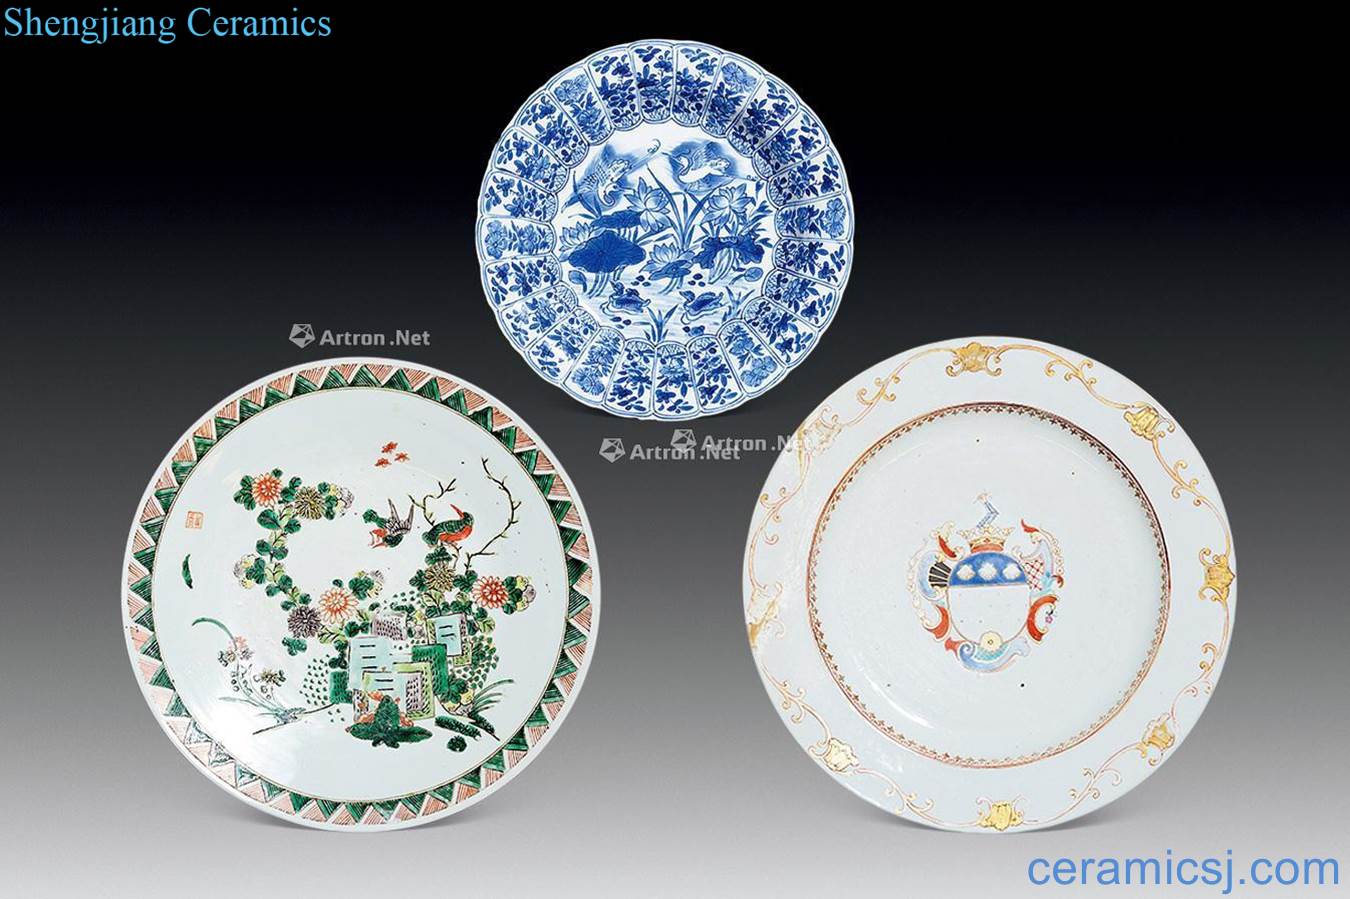 Colorful, enamel, porcelain plate (a)